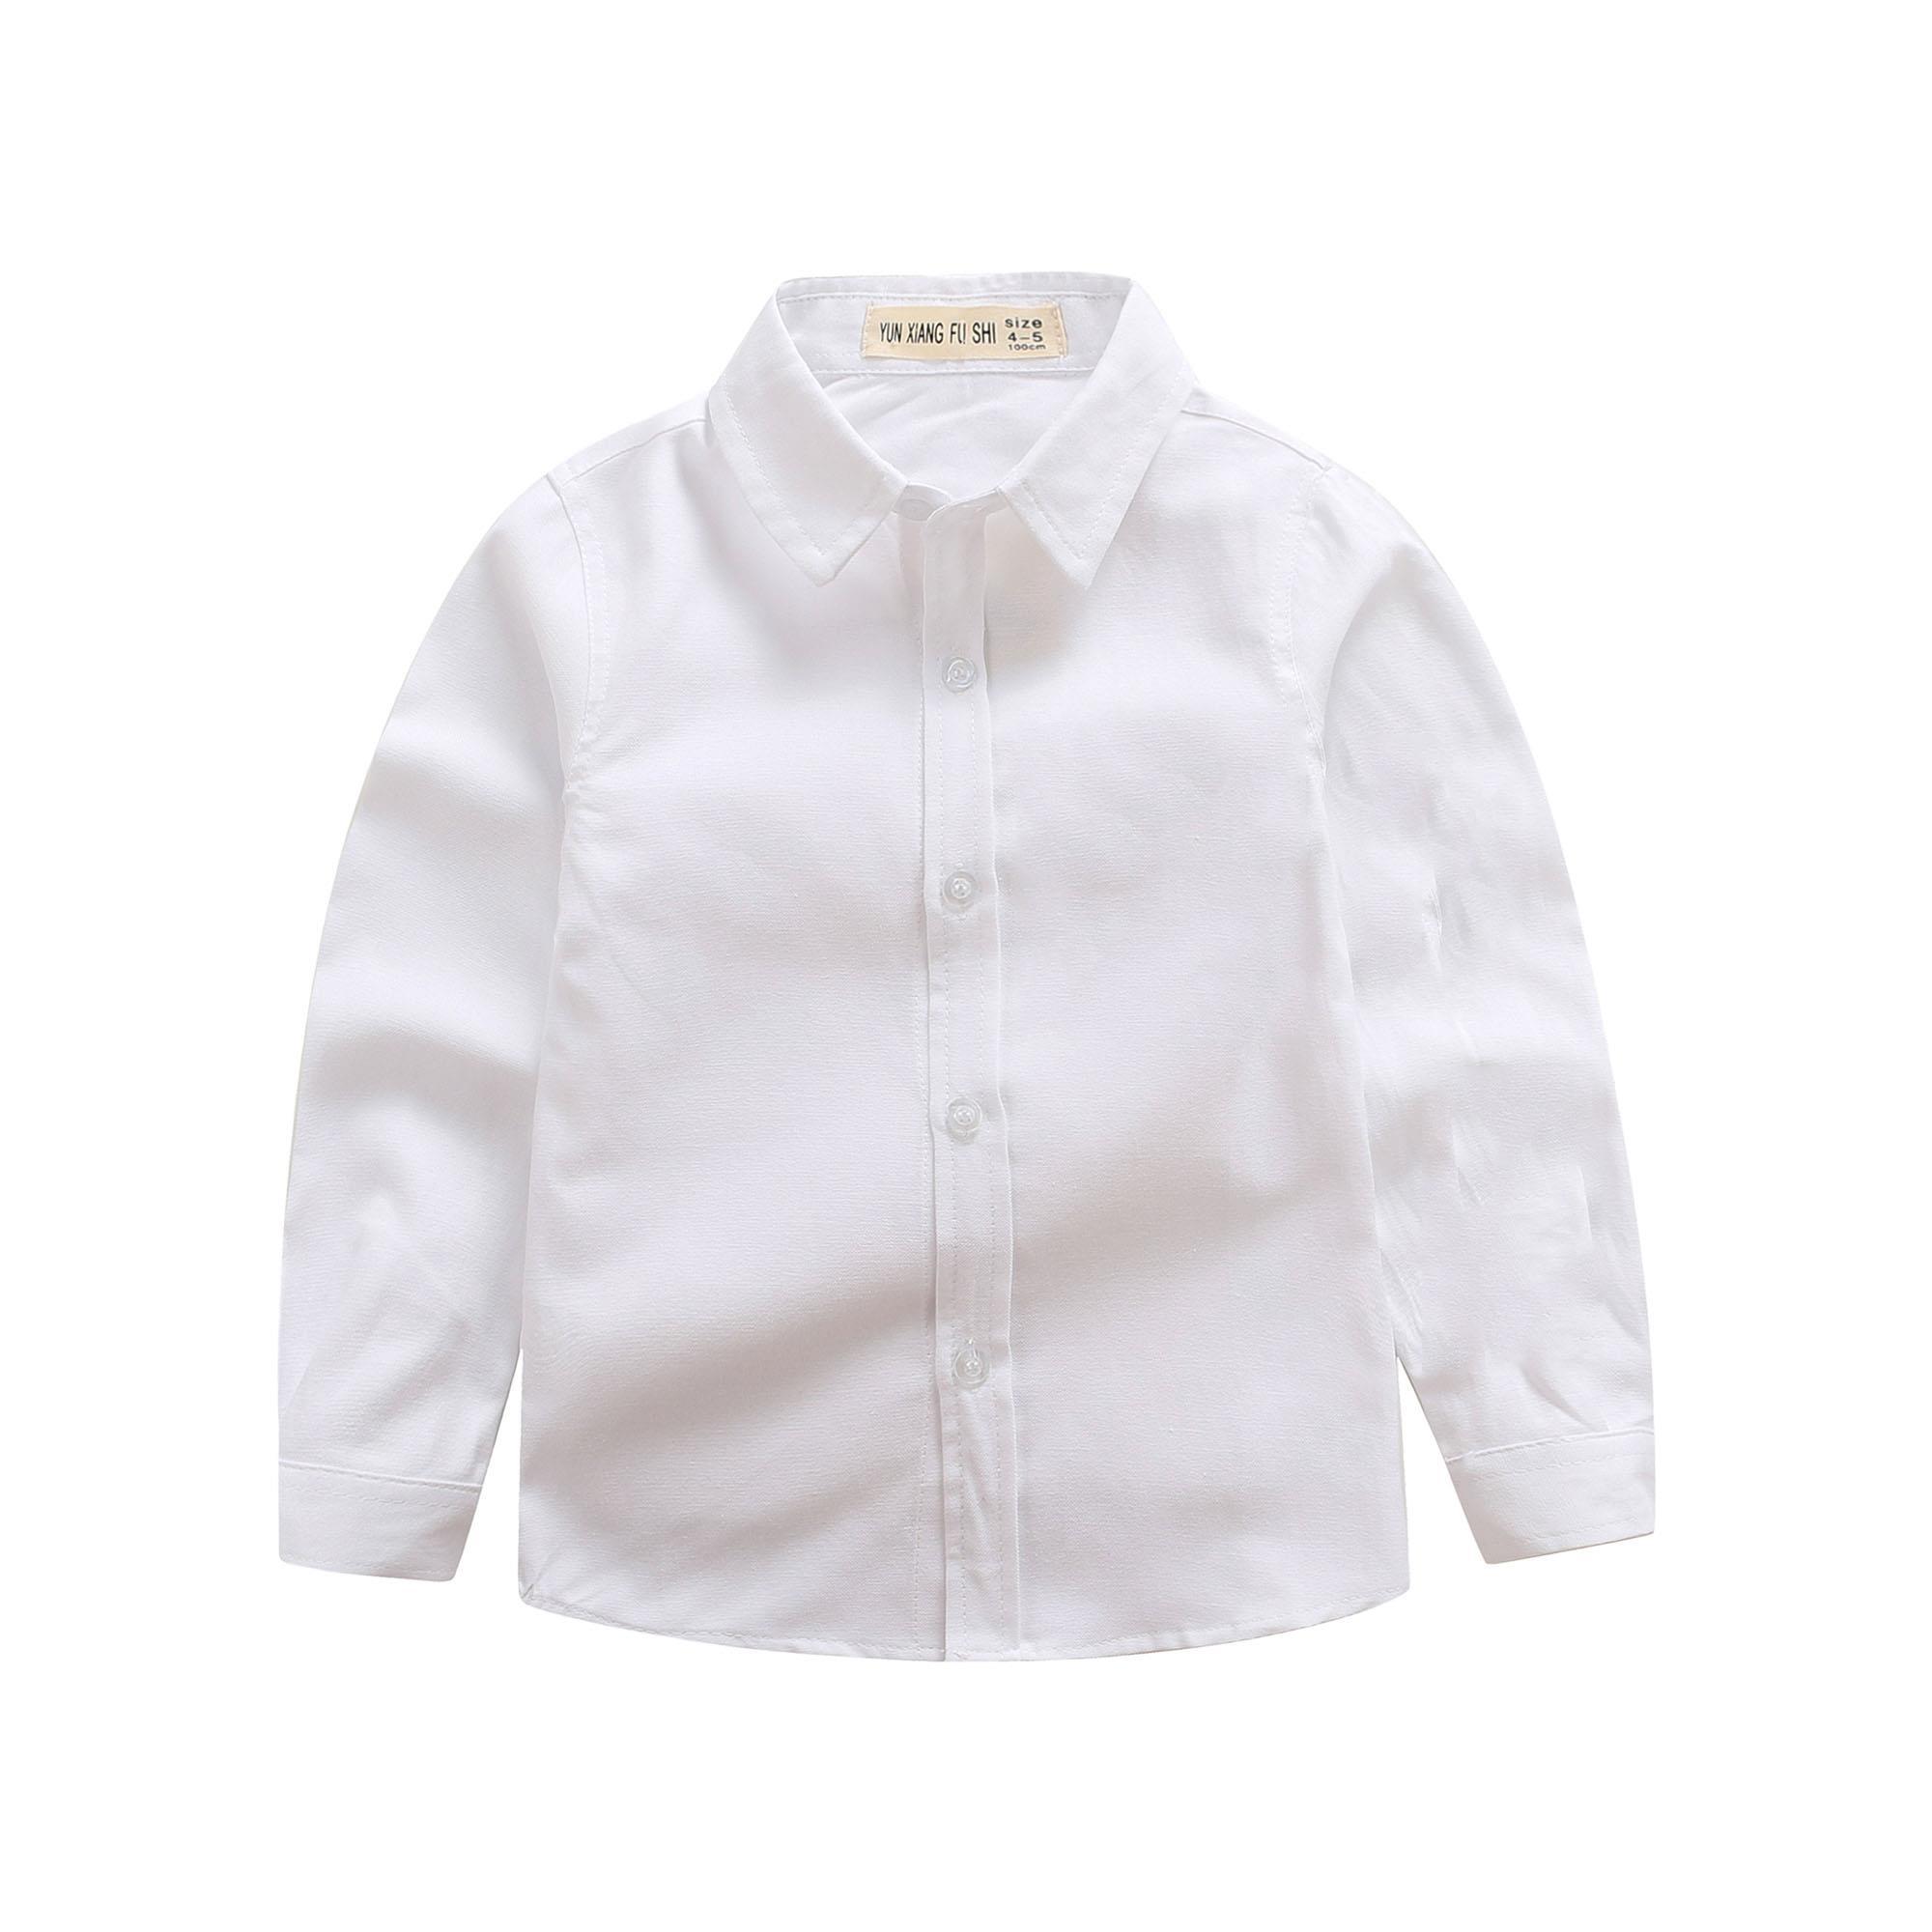 儿童白衬衫男童衬衫3-14岁长袖休闲纯色翻领打底小学生校服表演服